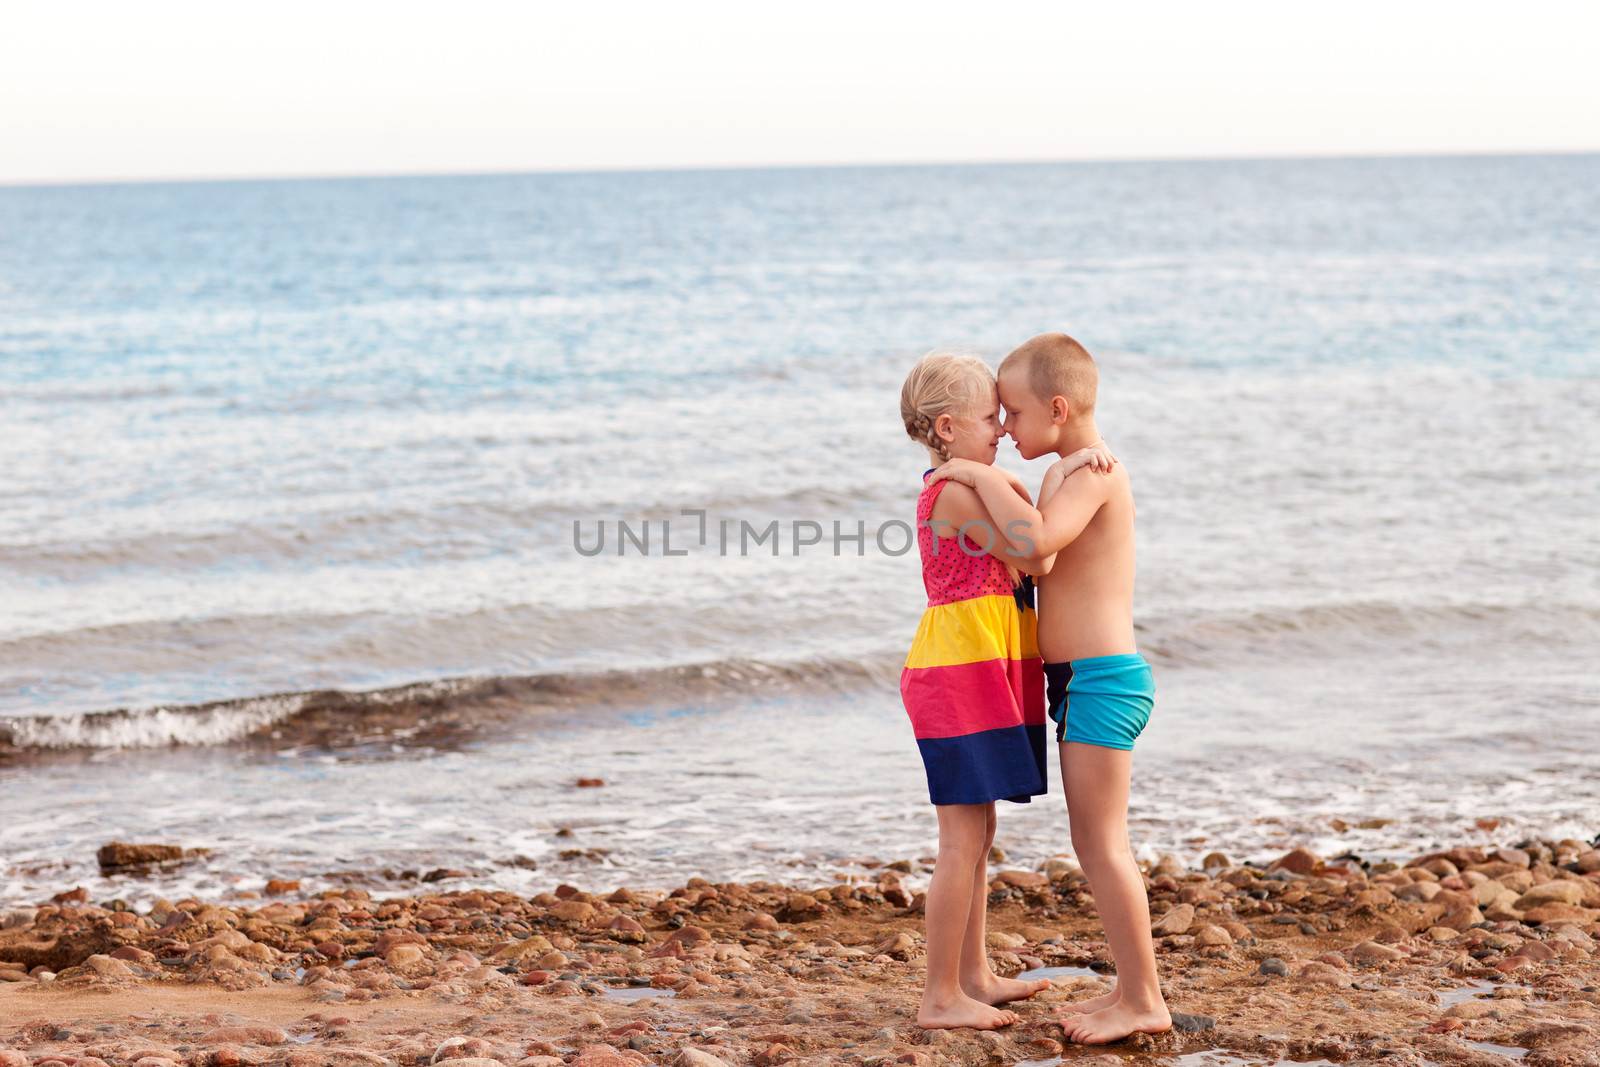 children on the beach by vsurkov